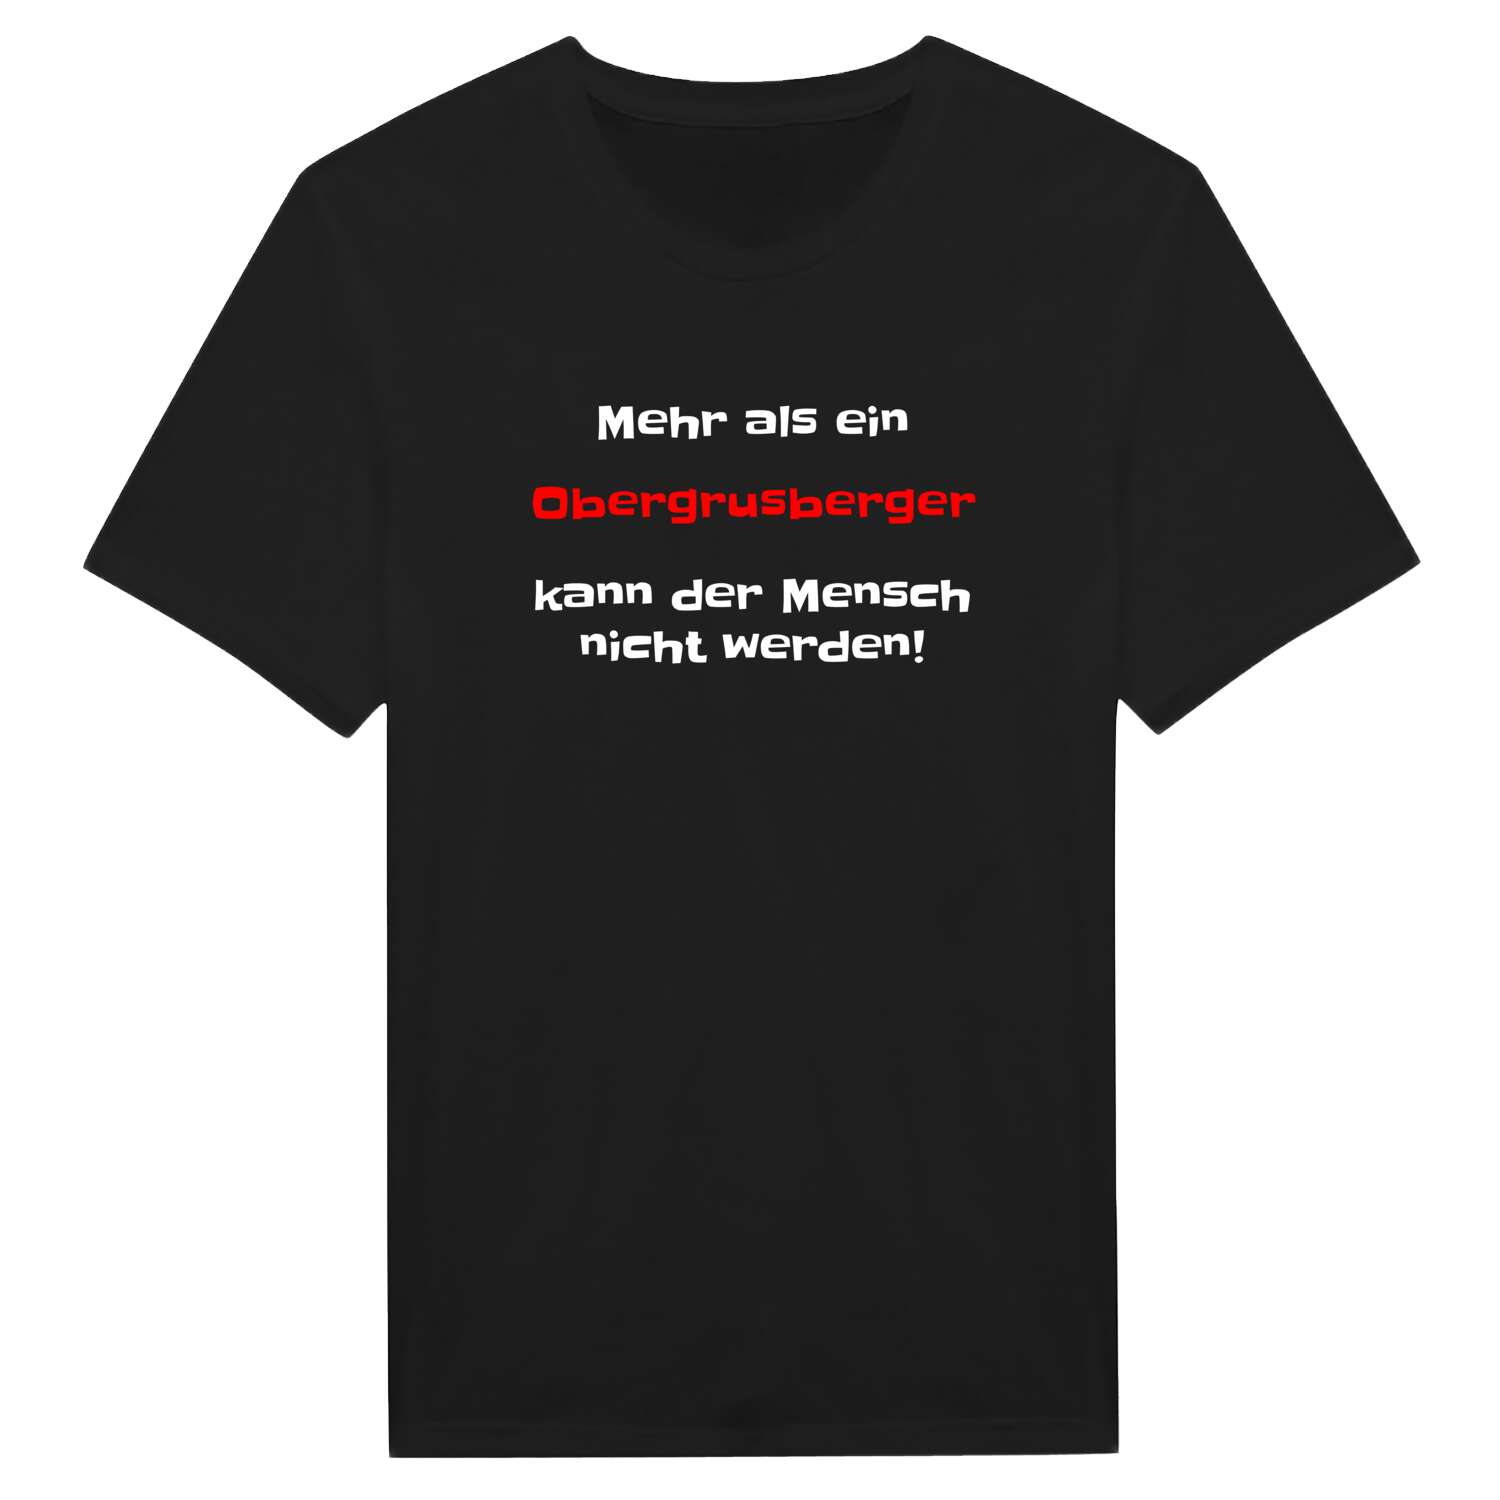 Obergrusberg T-Shirt »Mehr als ein«